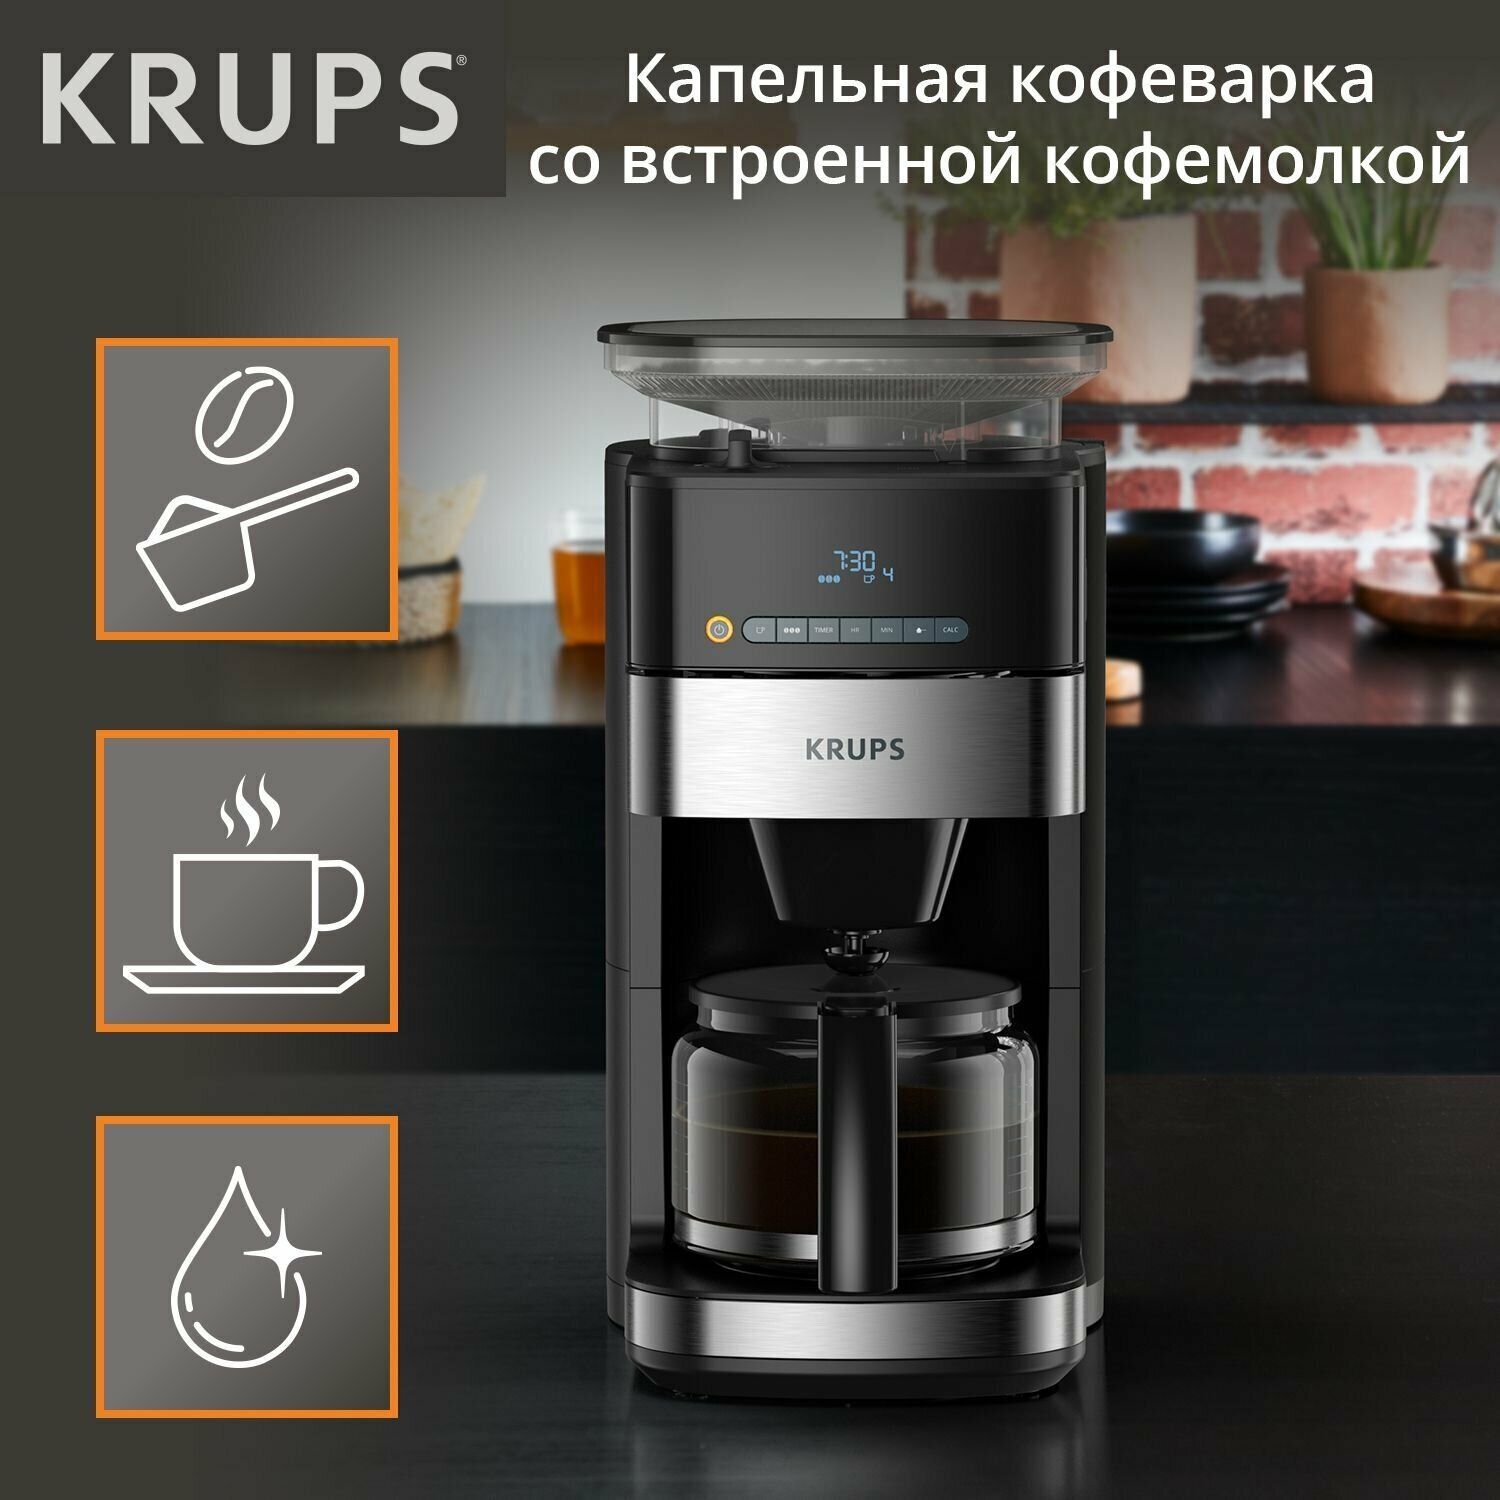 Кофеварка капельная Krups Grind Aroma KM832810, таймер, 3 степени помола, поддержание температуры 30 мин, черный